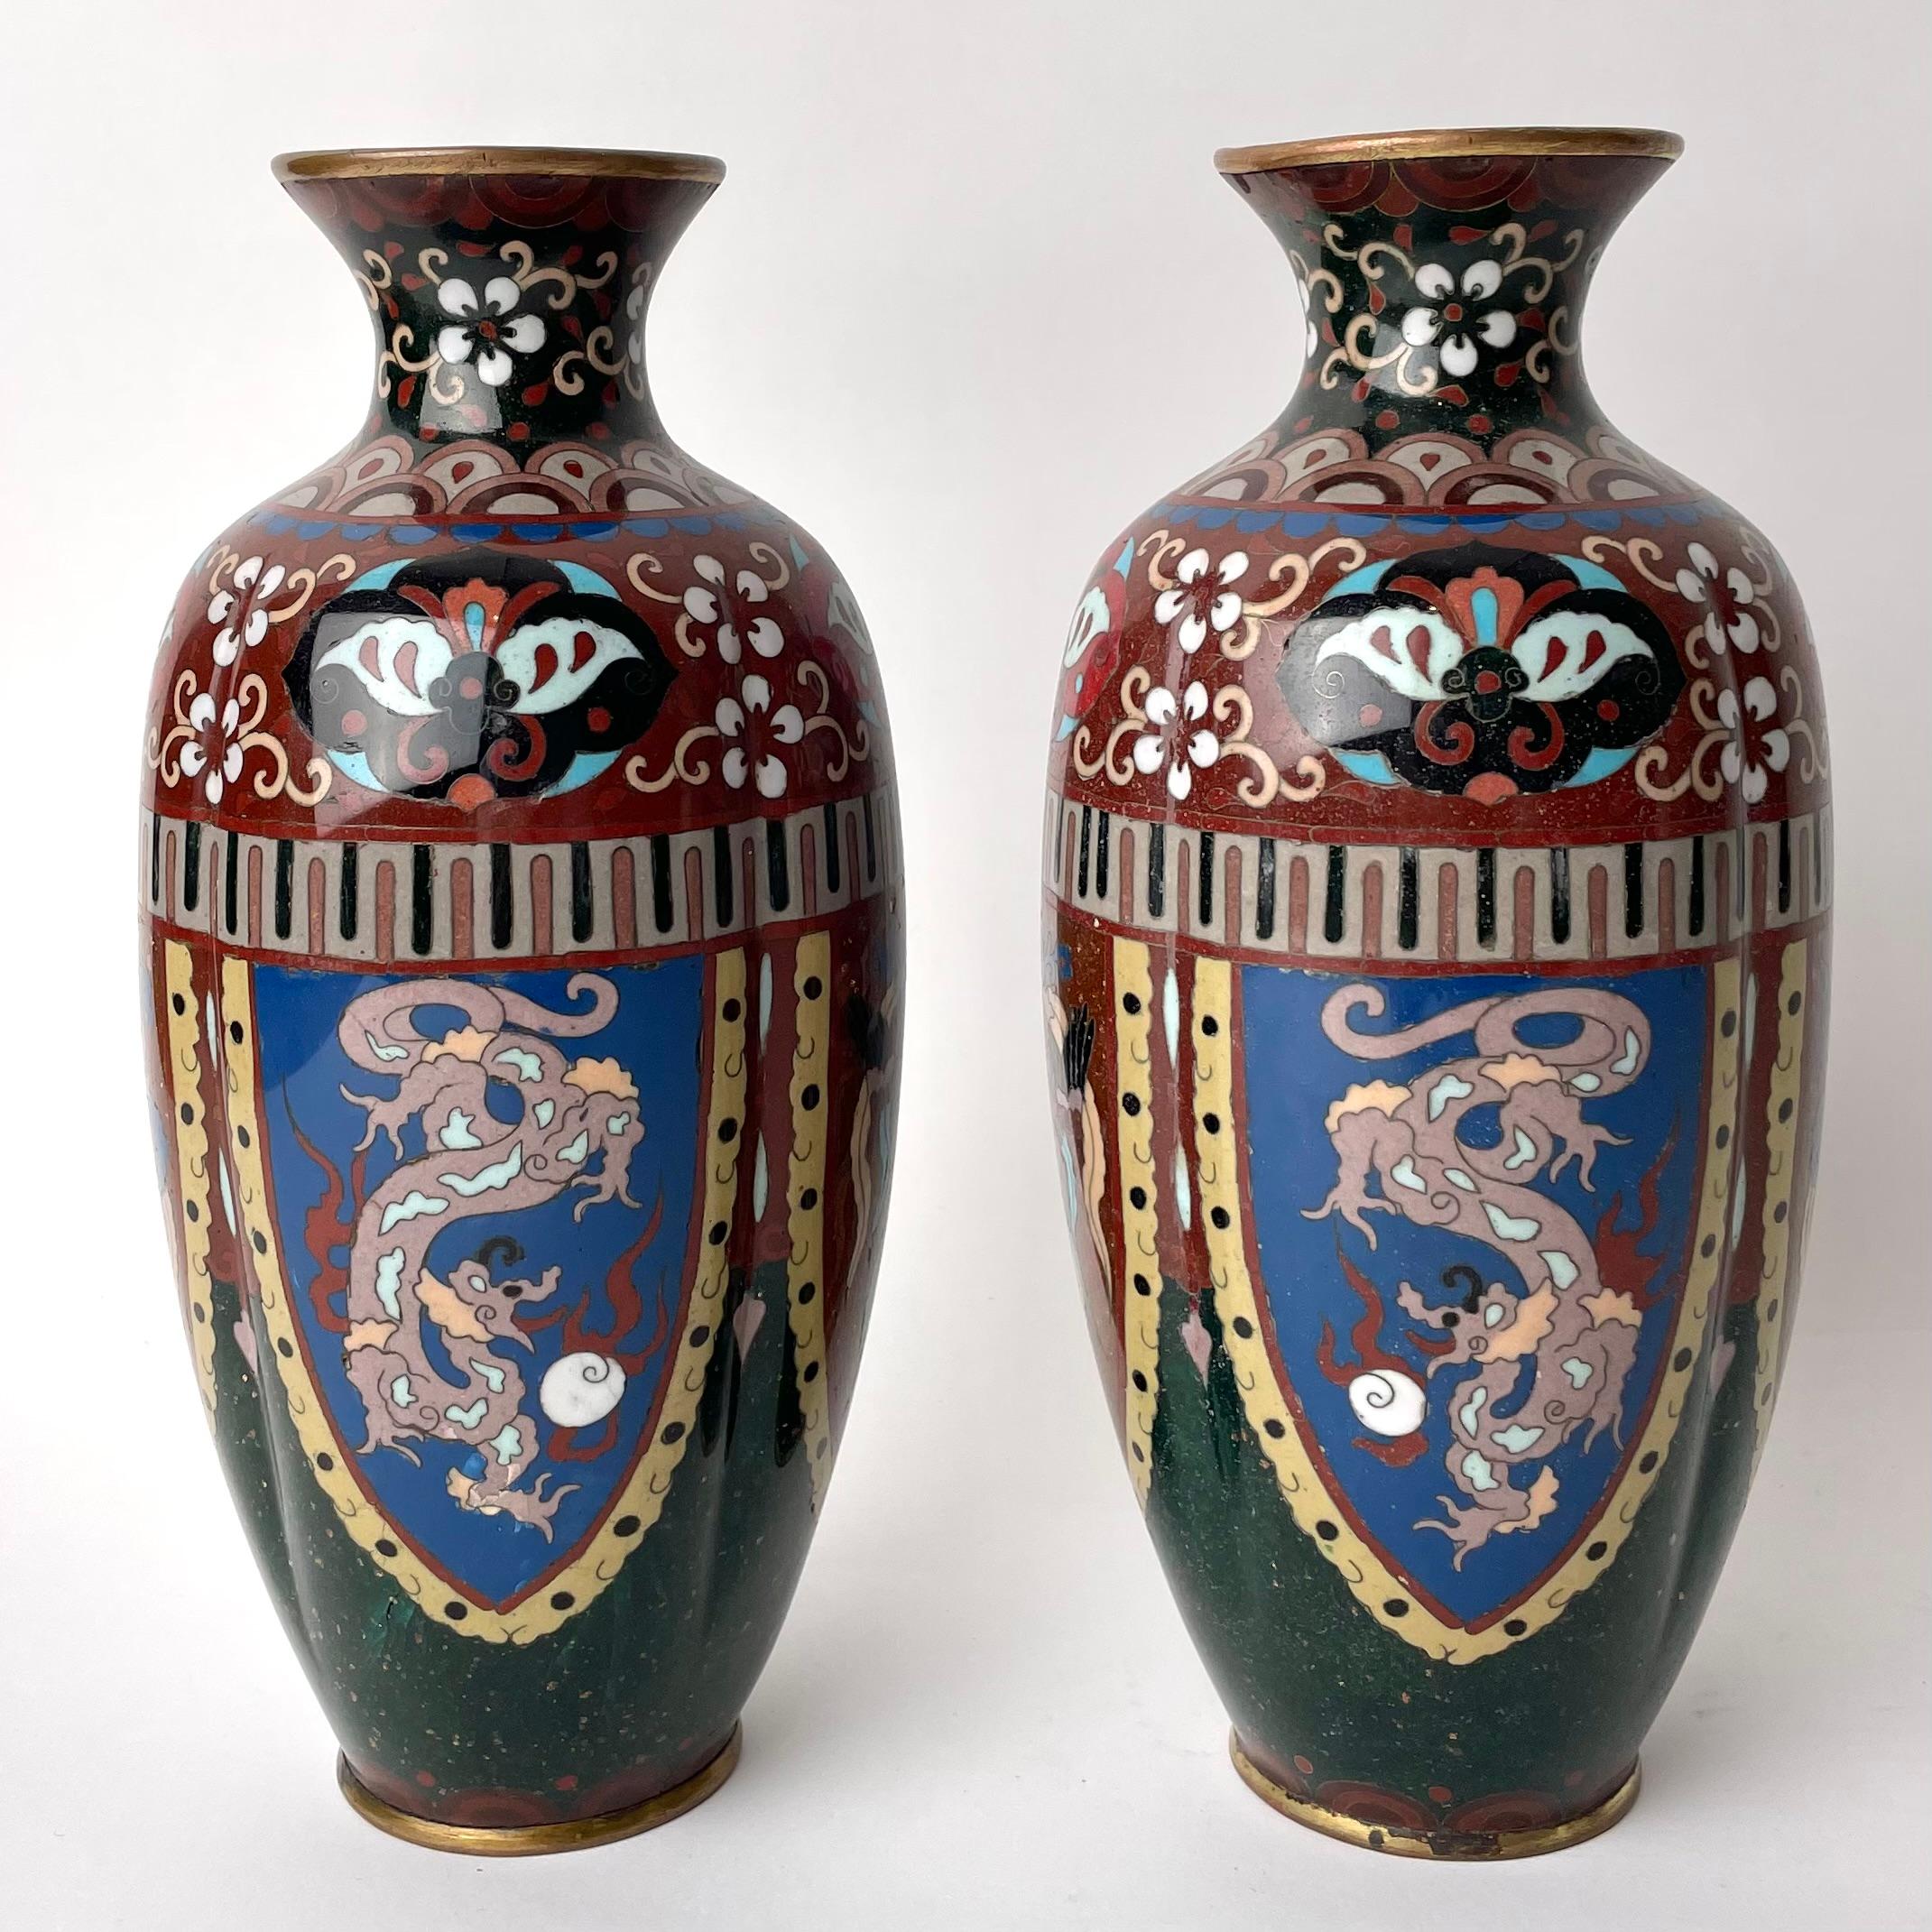 Ein Paar japanische Cloisonné-Emaille-Vasen. Japan in der Meiji-Ära (1867-1912), eine Zeit, die durch die rasche Umwandlung der traditionellen japanischen Gesellschaft in eine Weltmacht gekennzeichnet war. Der Wachstumsphase ging eine Ära der